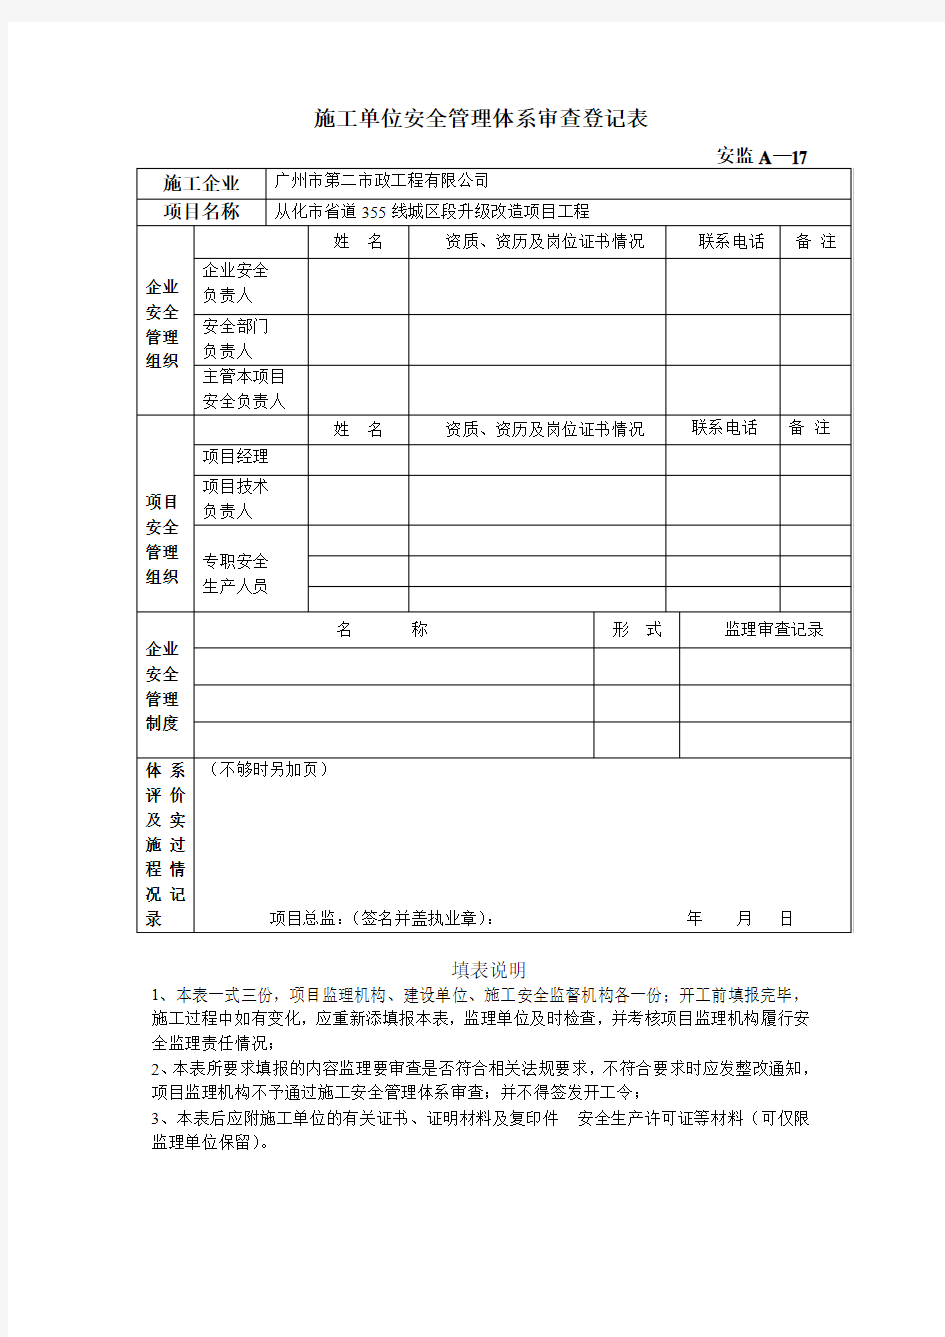 A-17施工单位安全管理体系审查登记表